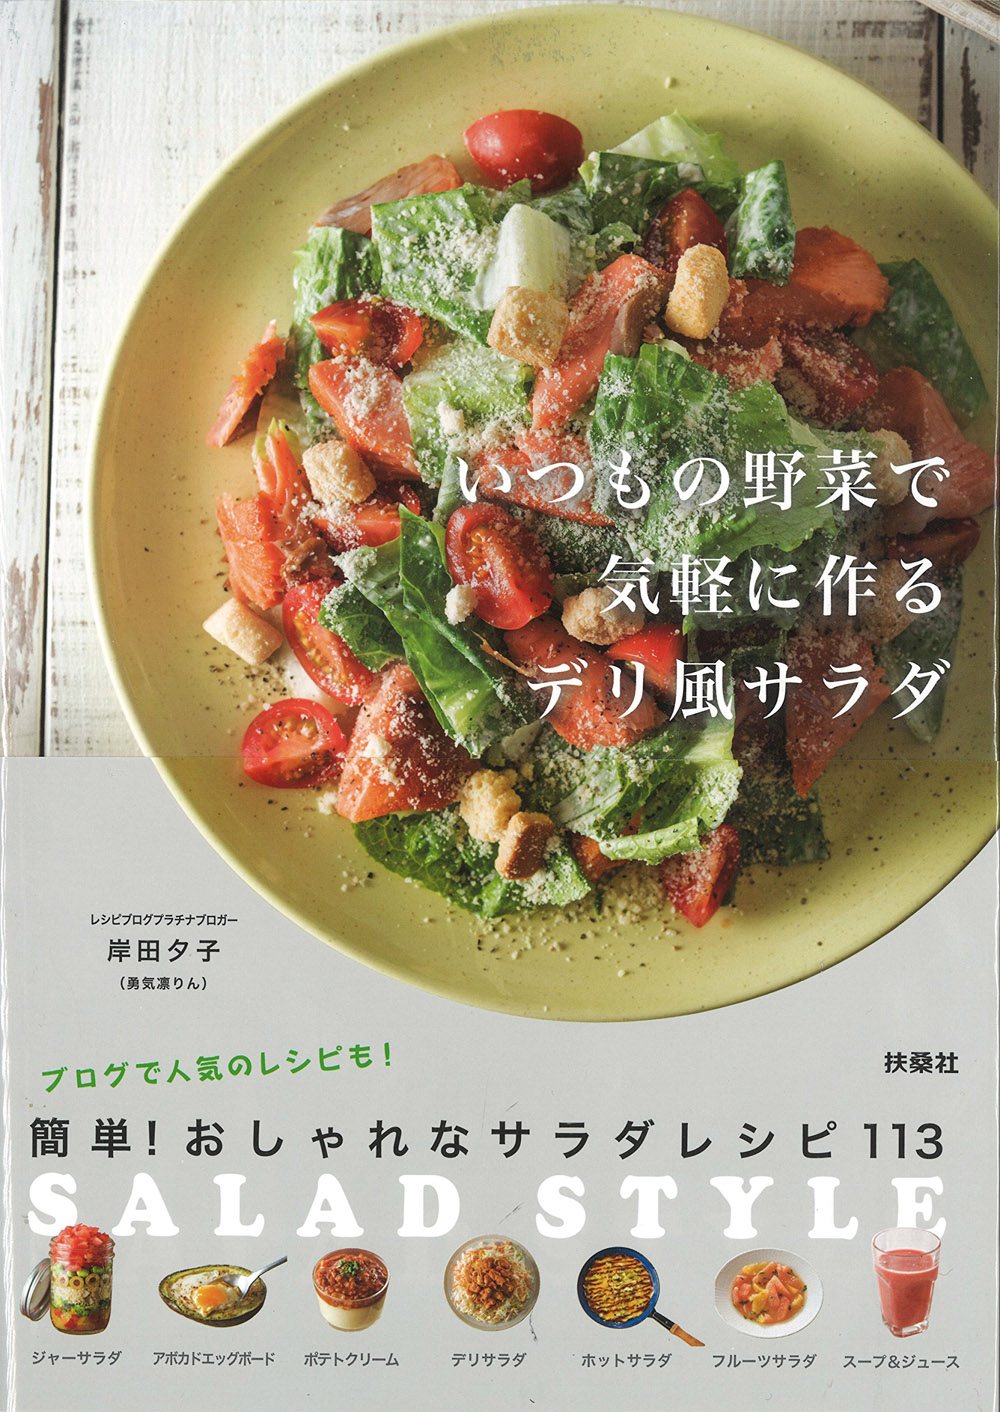 いつもの野菜で気軽に作るデリ風サラダ-SALAD STYLE-